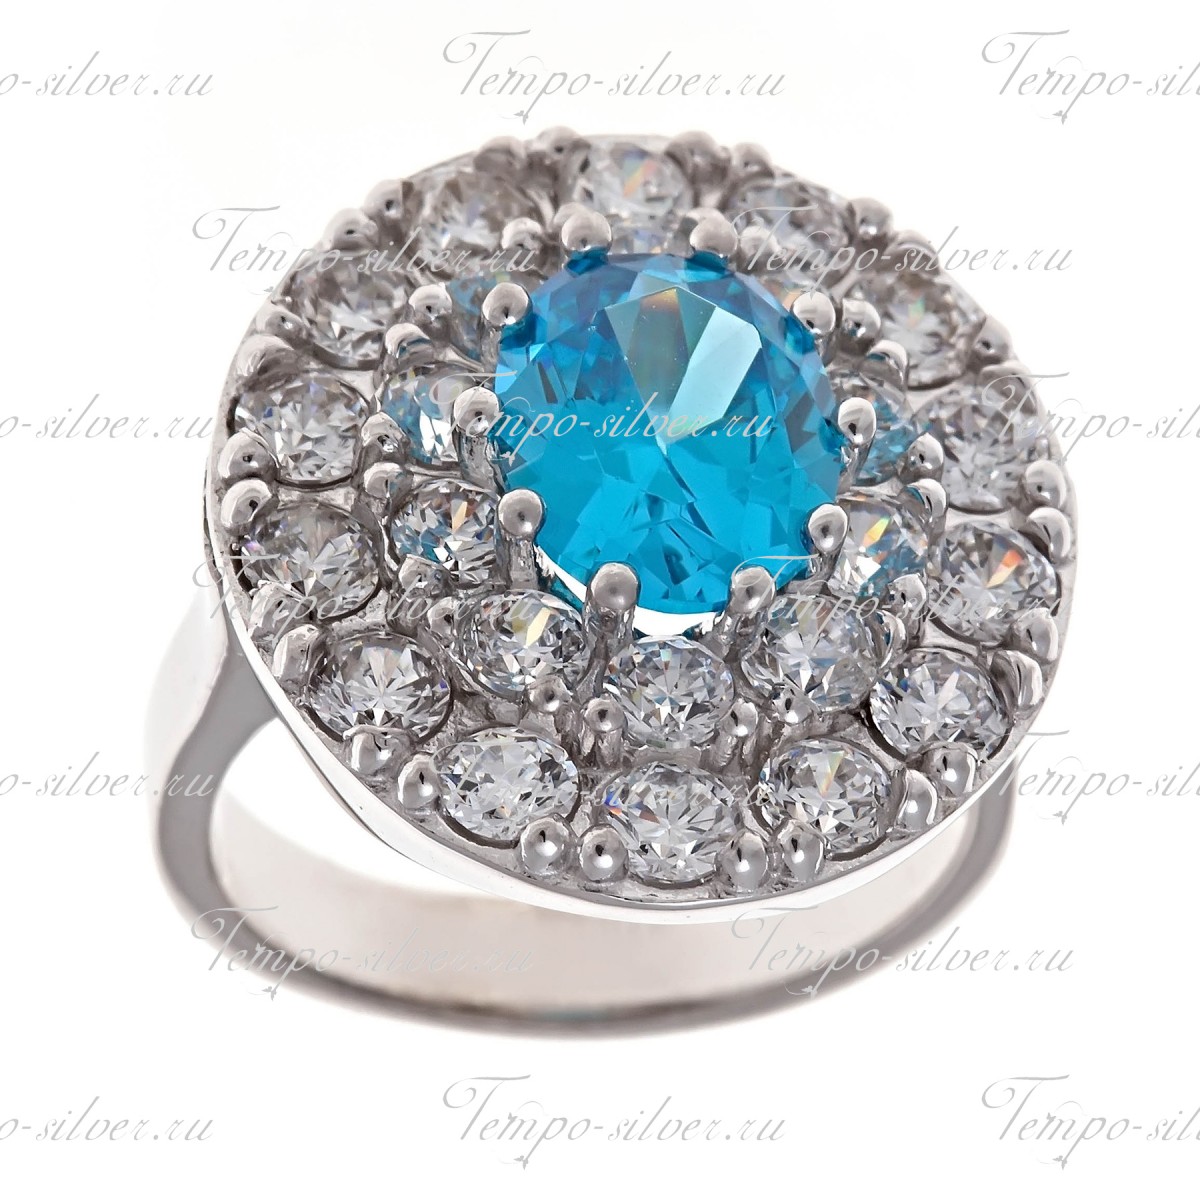 Кольцо из серебра с овальным голубым камнем в центре россыпи из белых камней